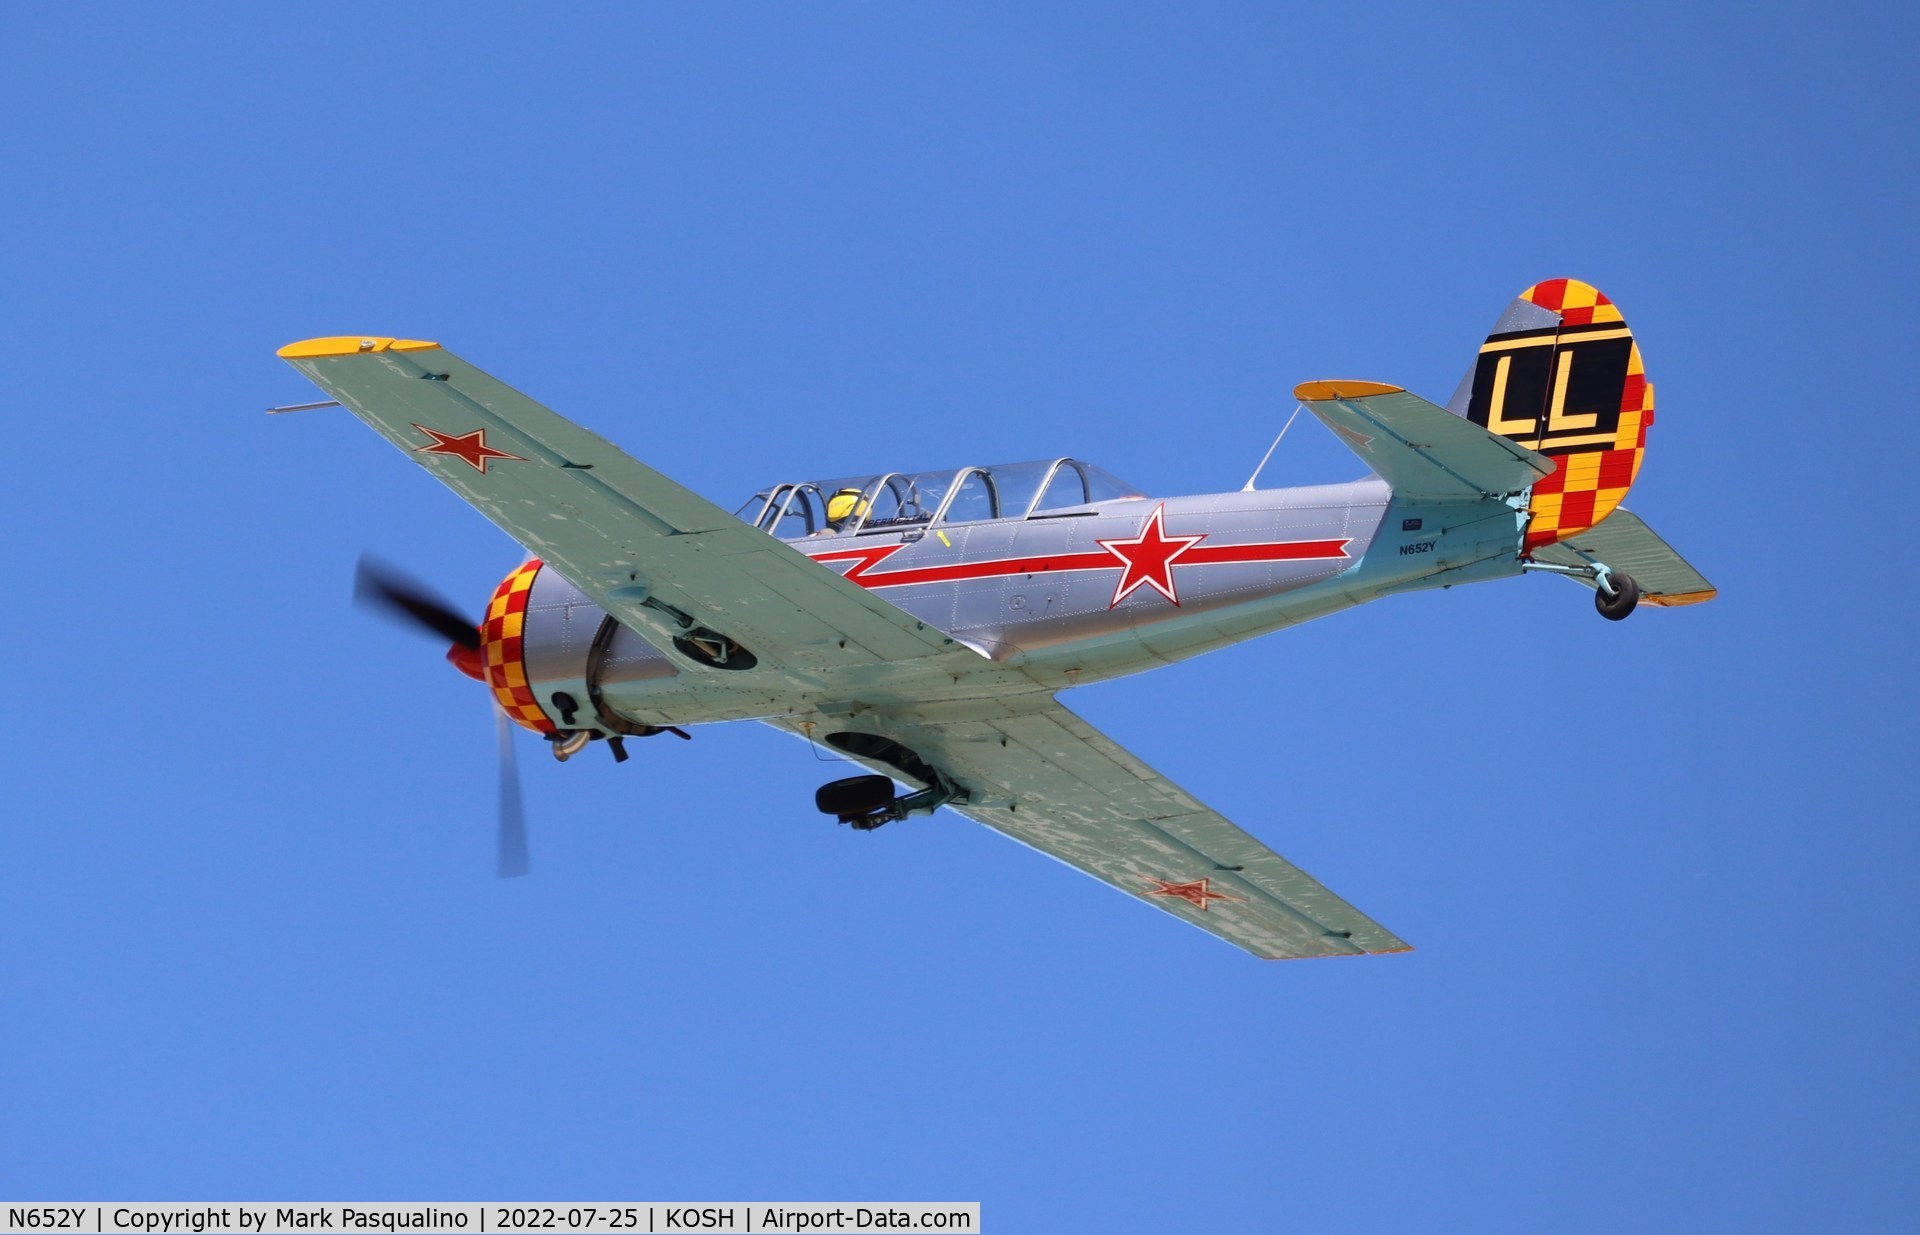 N652Y, 2004 Yakovlev (Aerostar) Yak-52TW C/N 0412510, Yak-52TW